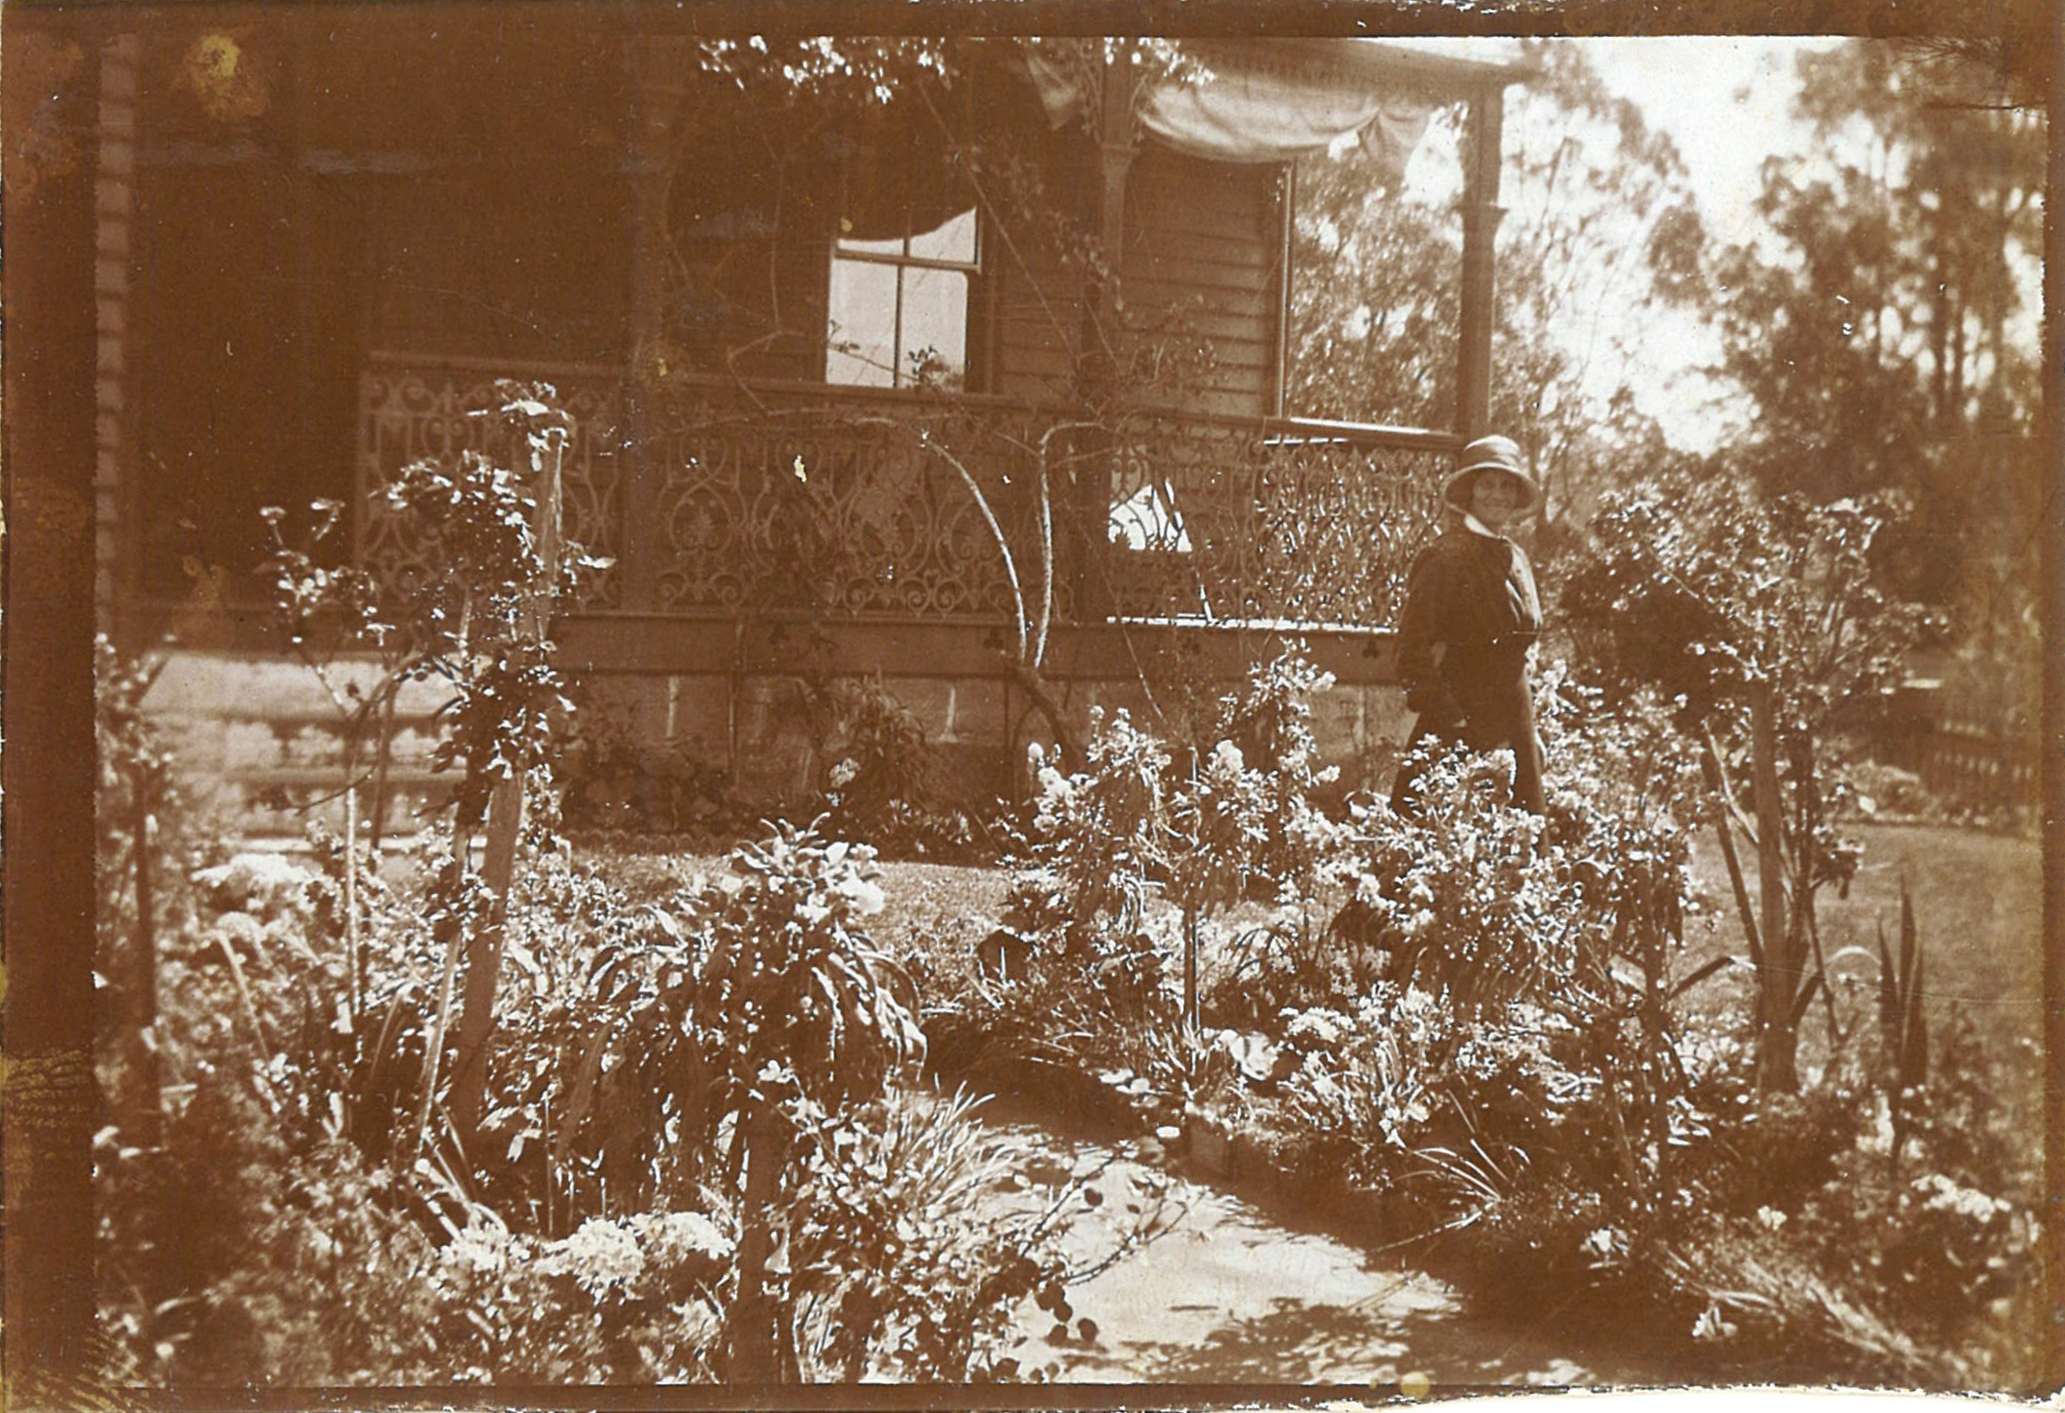 The gardener in her garden [in front of Meroogal, Nowra], around 
September 1919 / photographer unknown